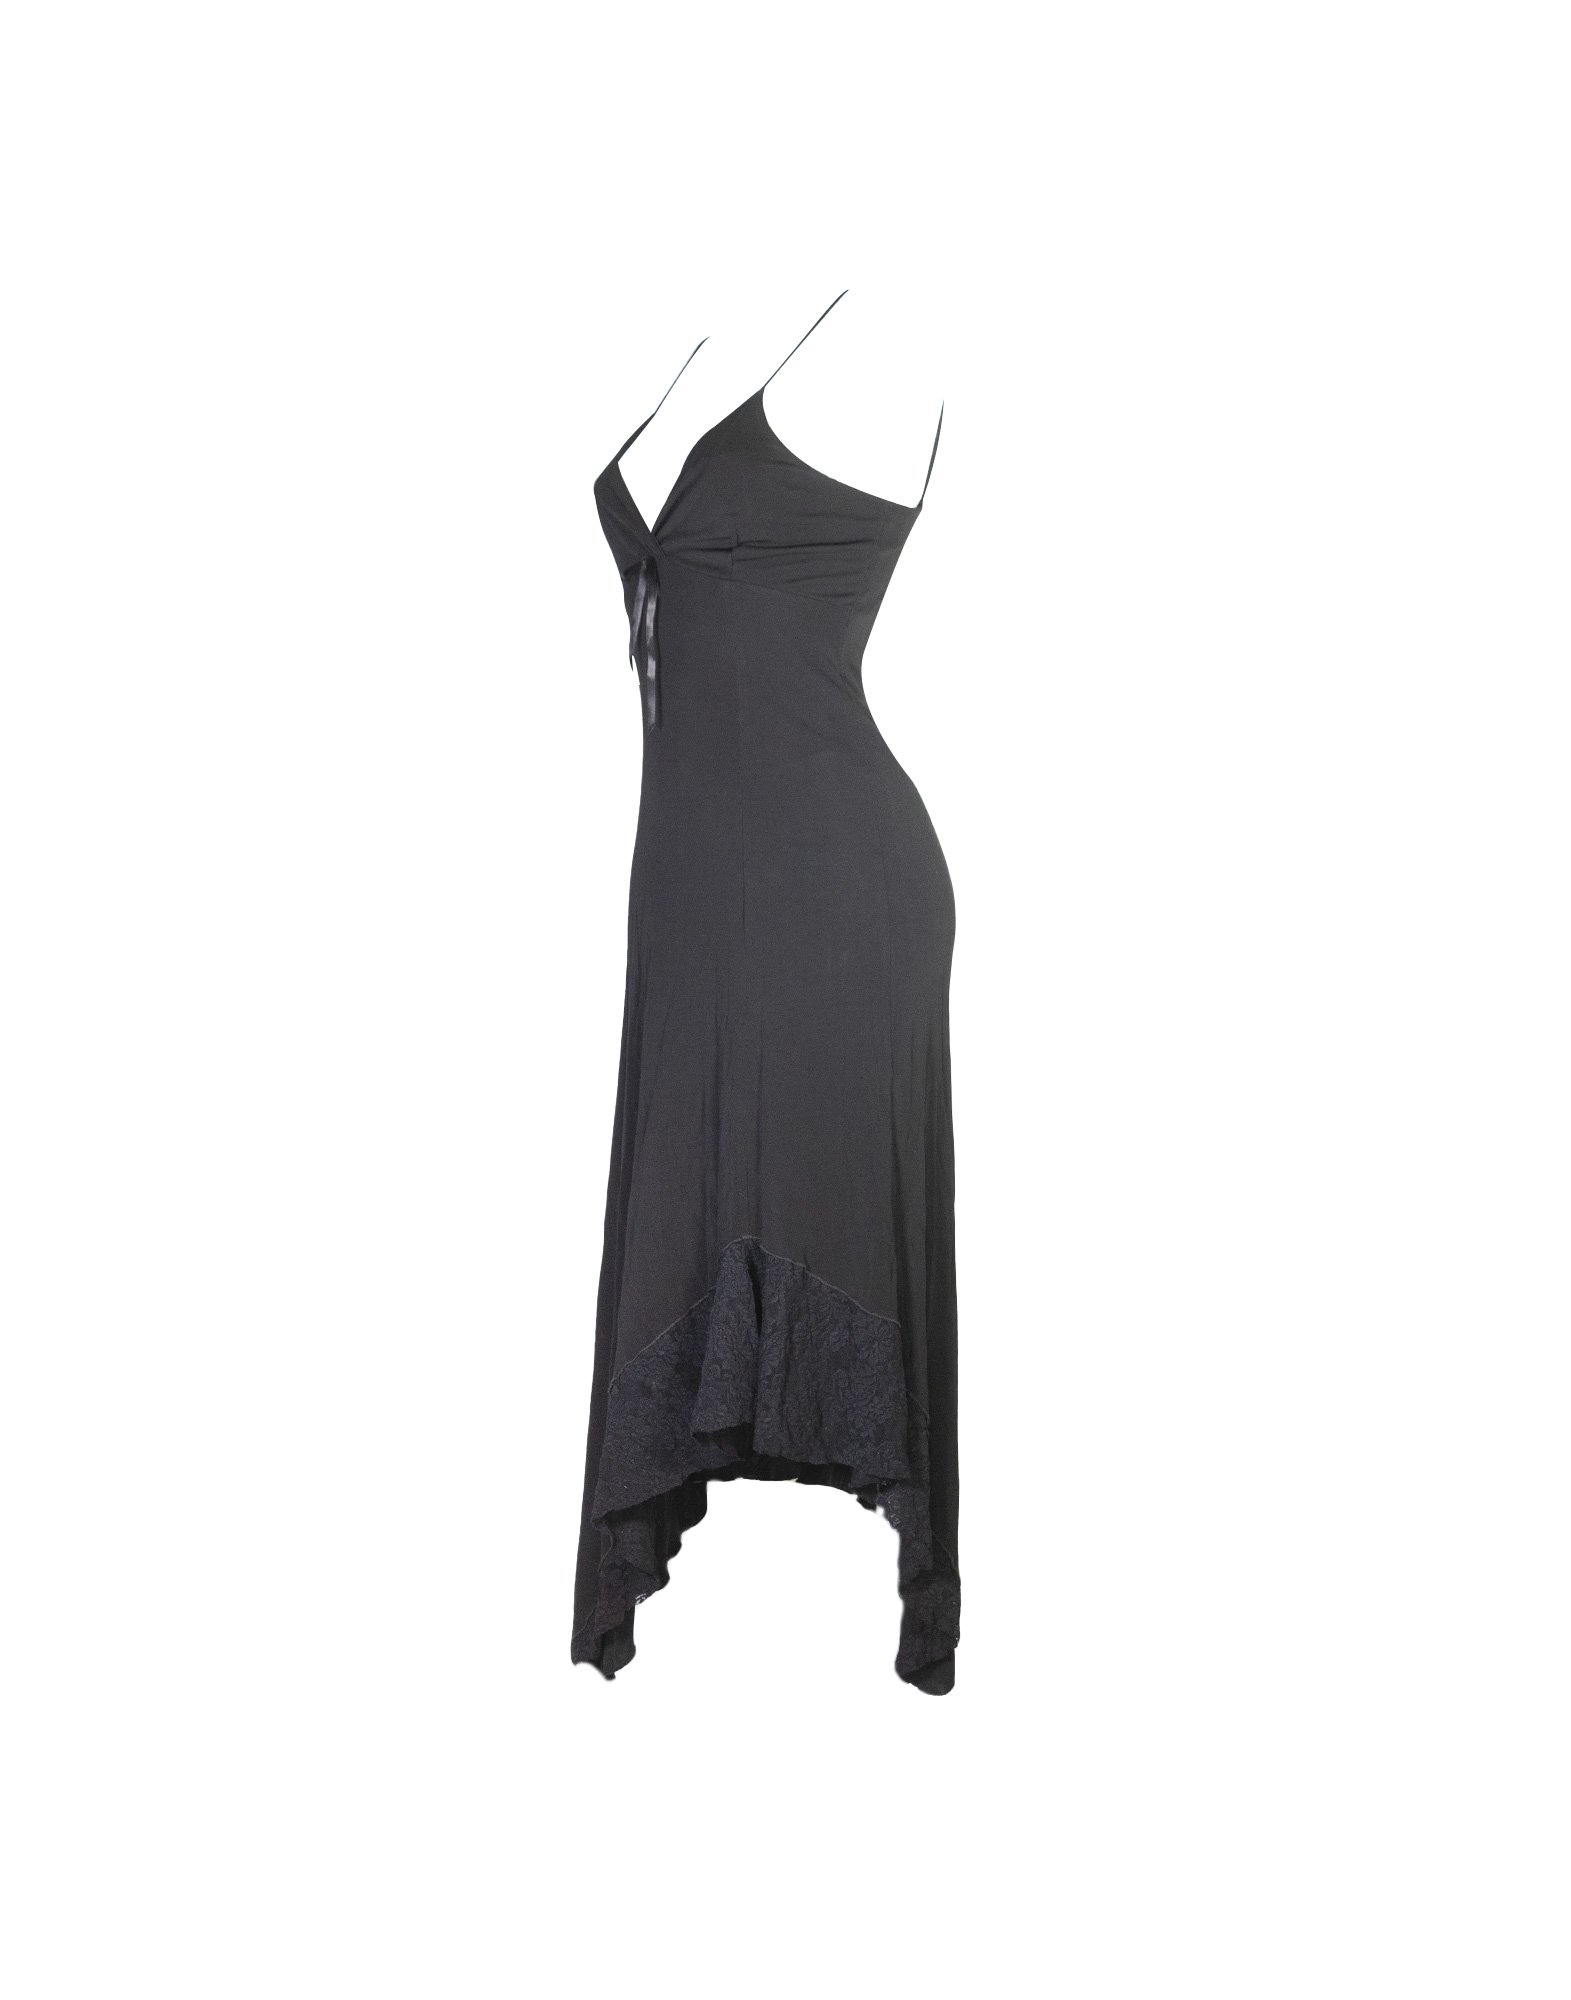 Sportstaff - Black rayon lingerie dress